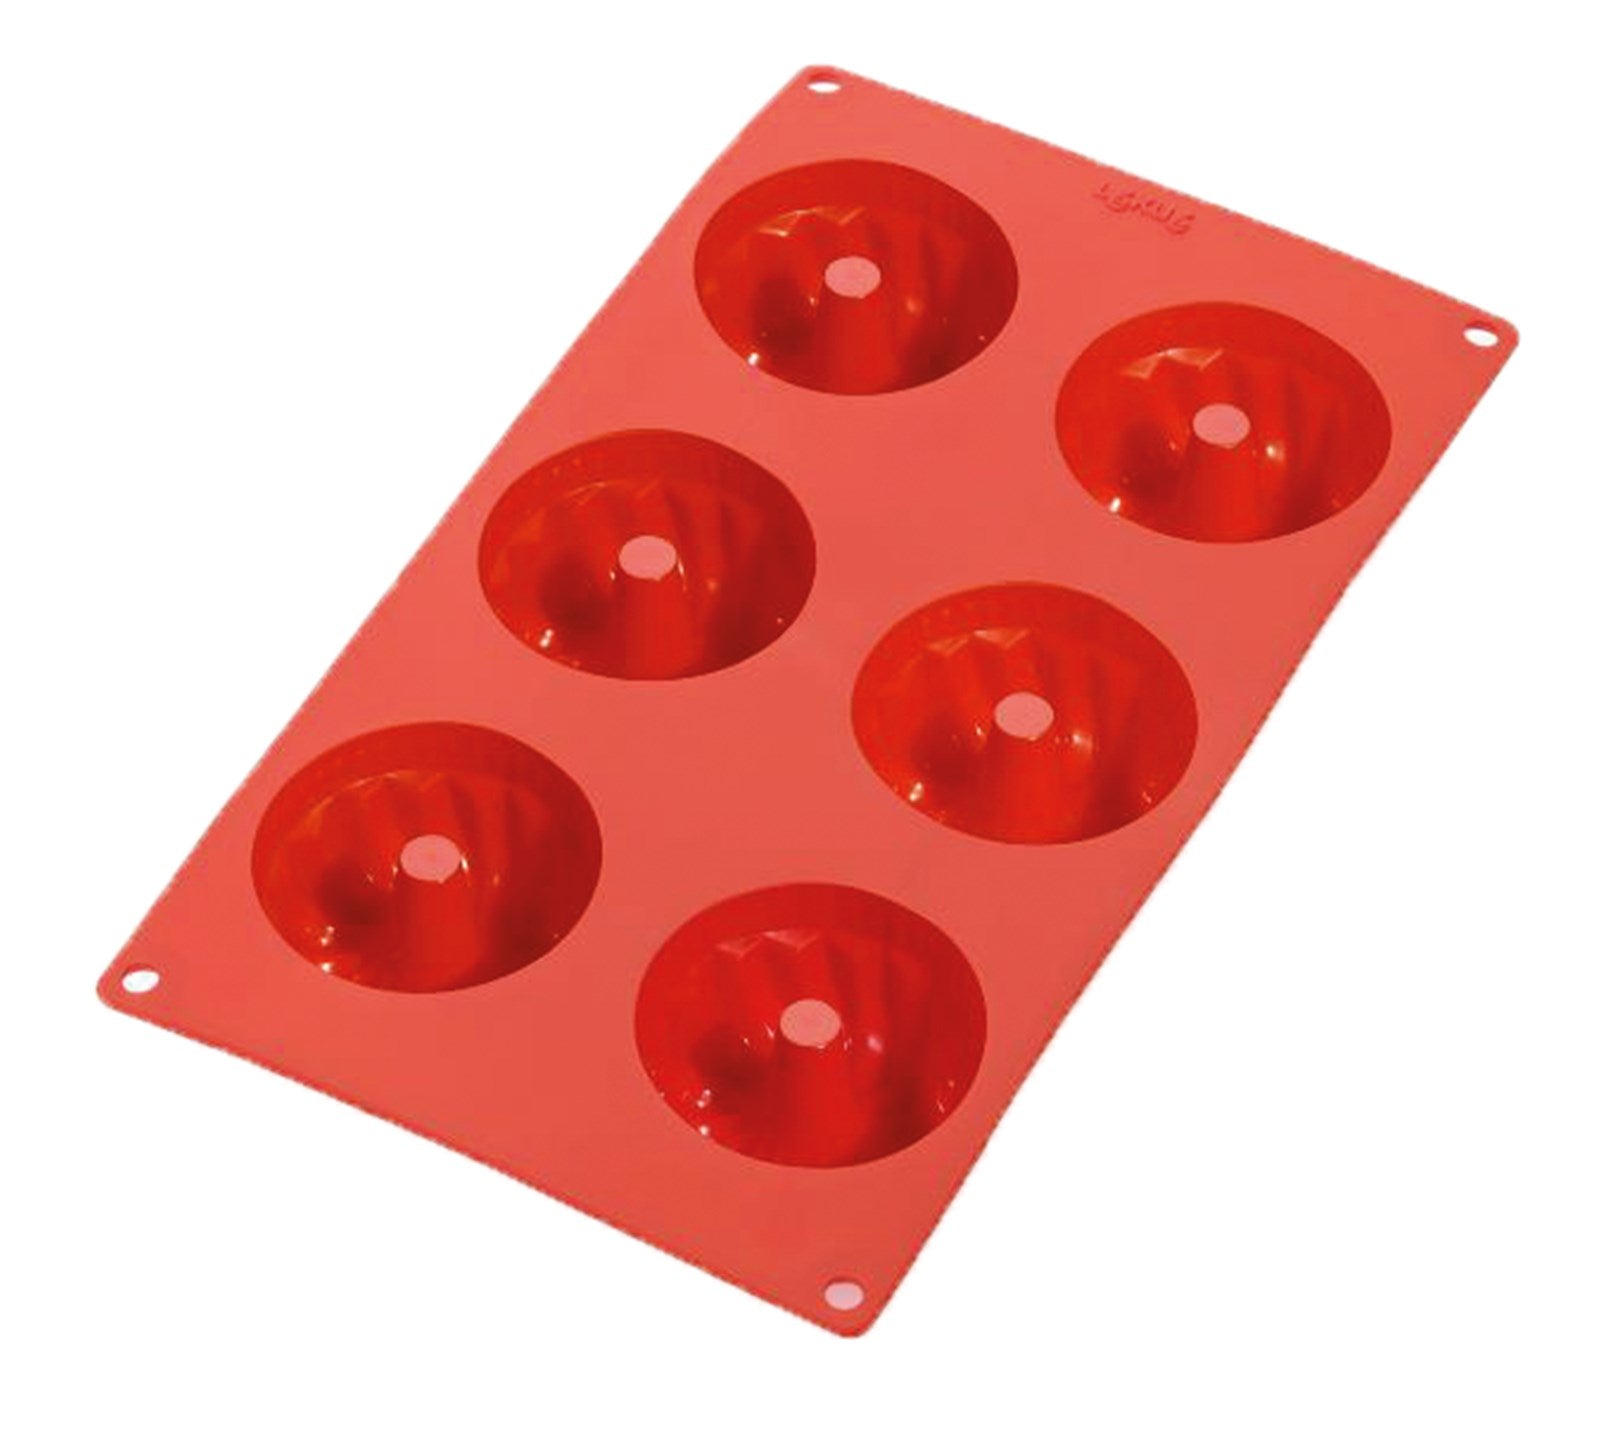 Backform 6er Gugelhopf Rot, Ø7 cm h: 3.5 cm, Geschenkbox in Rot präsentiert im Onlineshop von KAQTU Design AG. Backen ist von Lékué